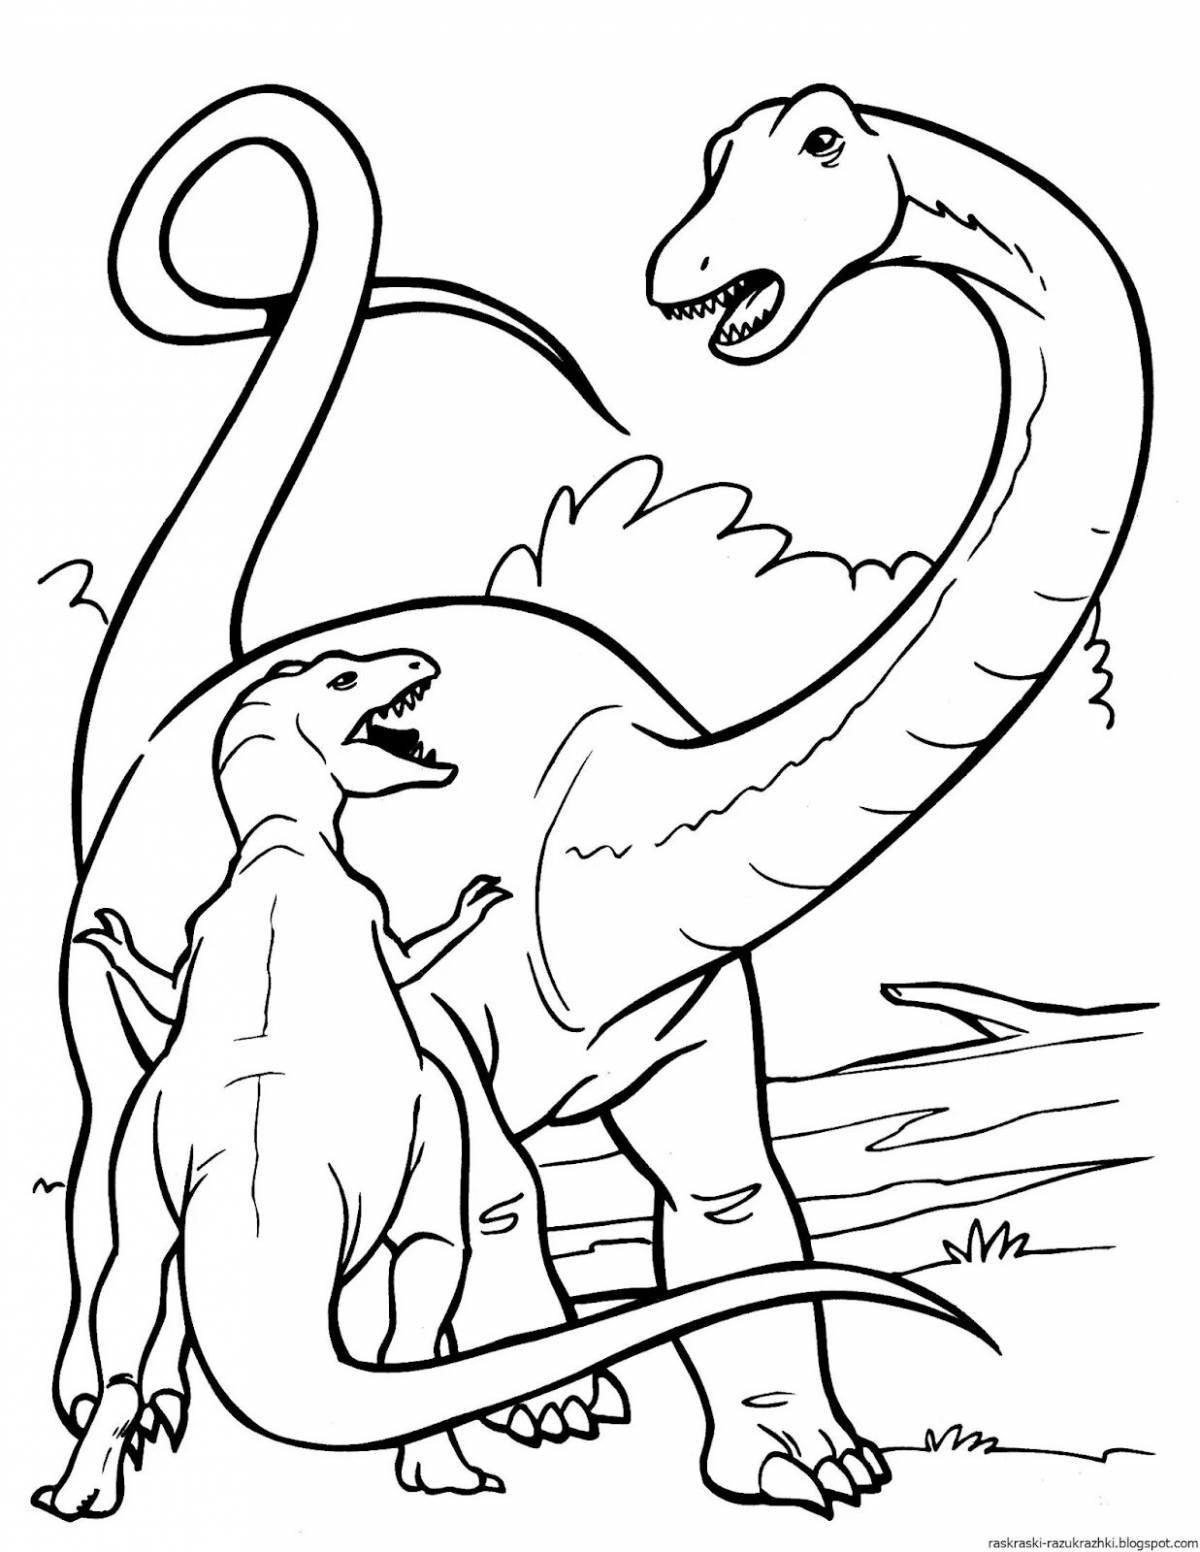 Adorable dinosaur coloring book